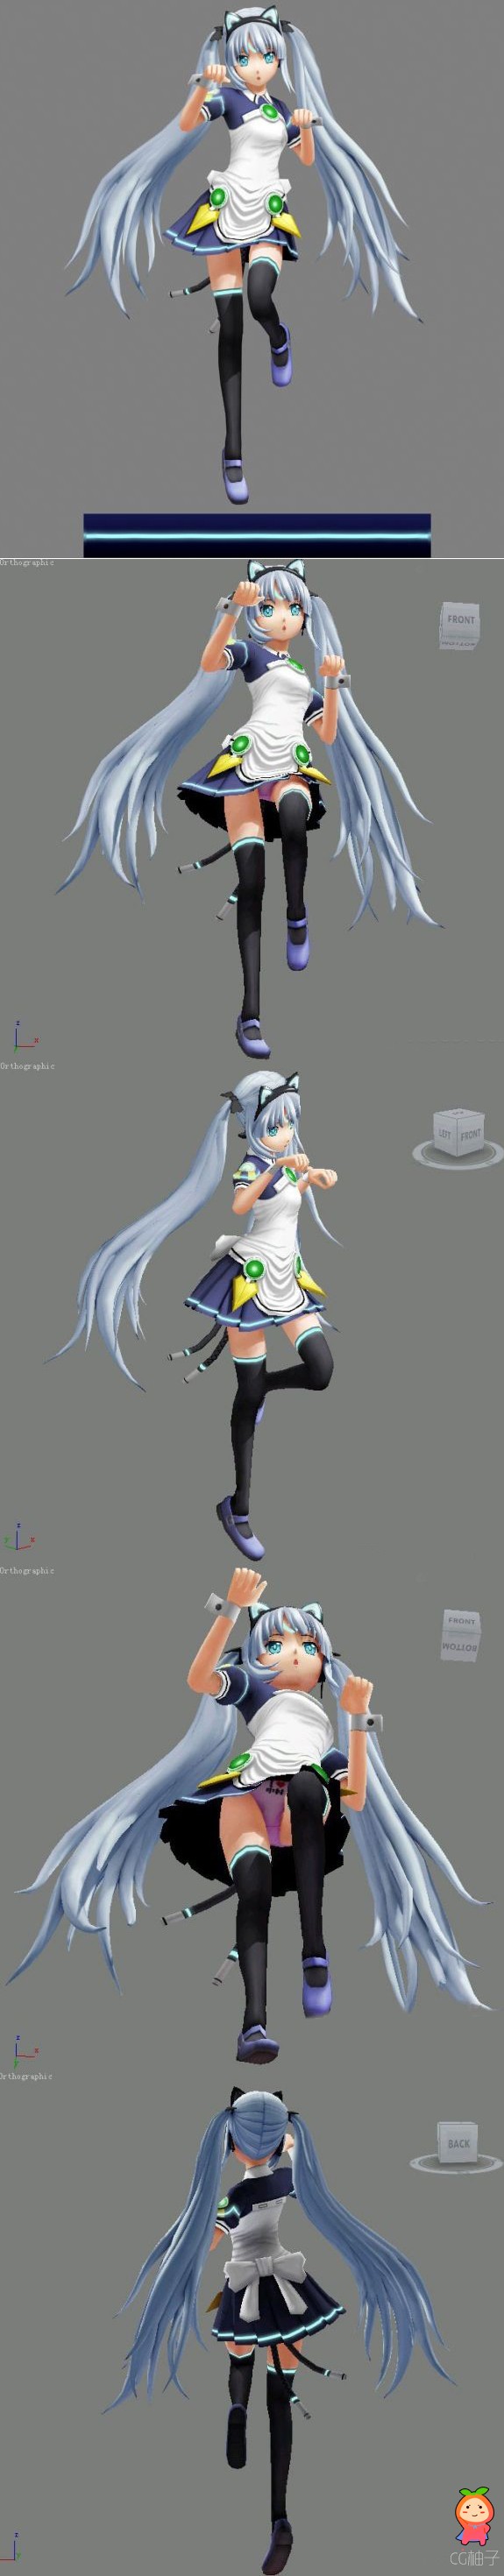 日本卡通女孩3D角色模型,卡通妹妹3D模型下载,3D美术资源下载